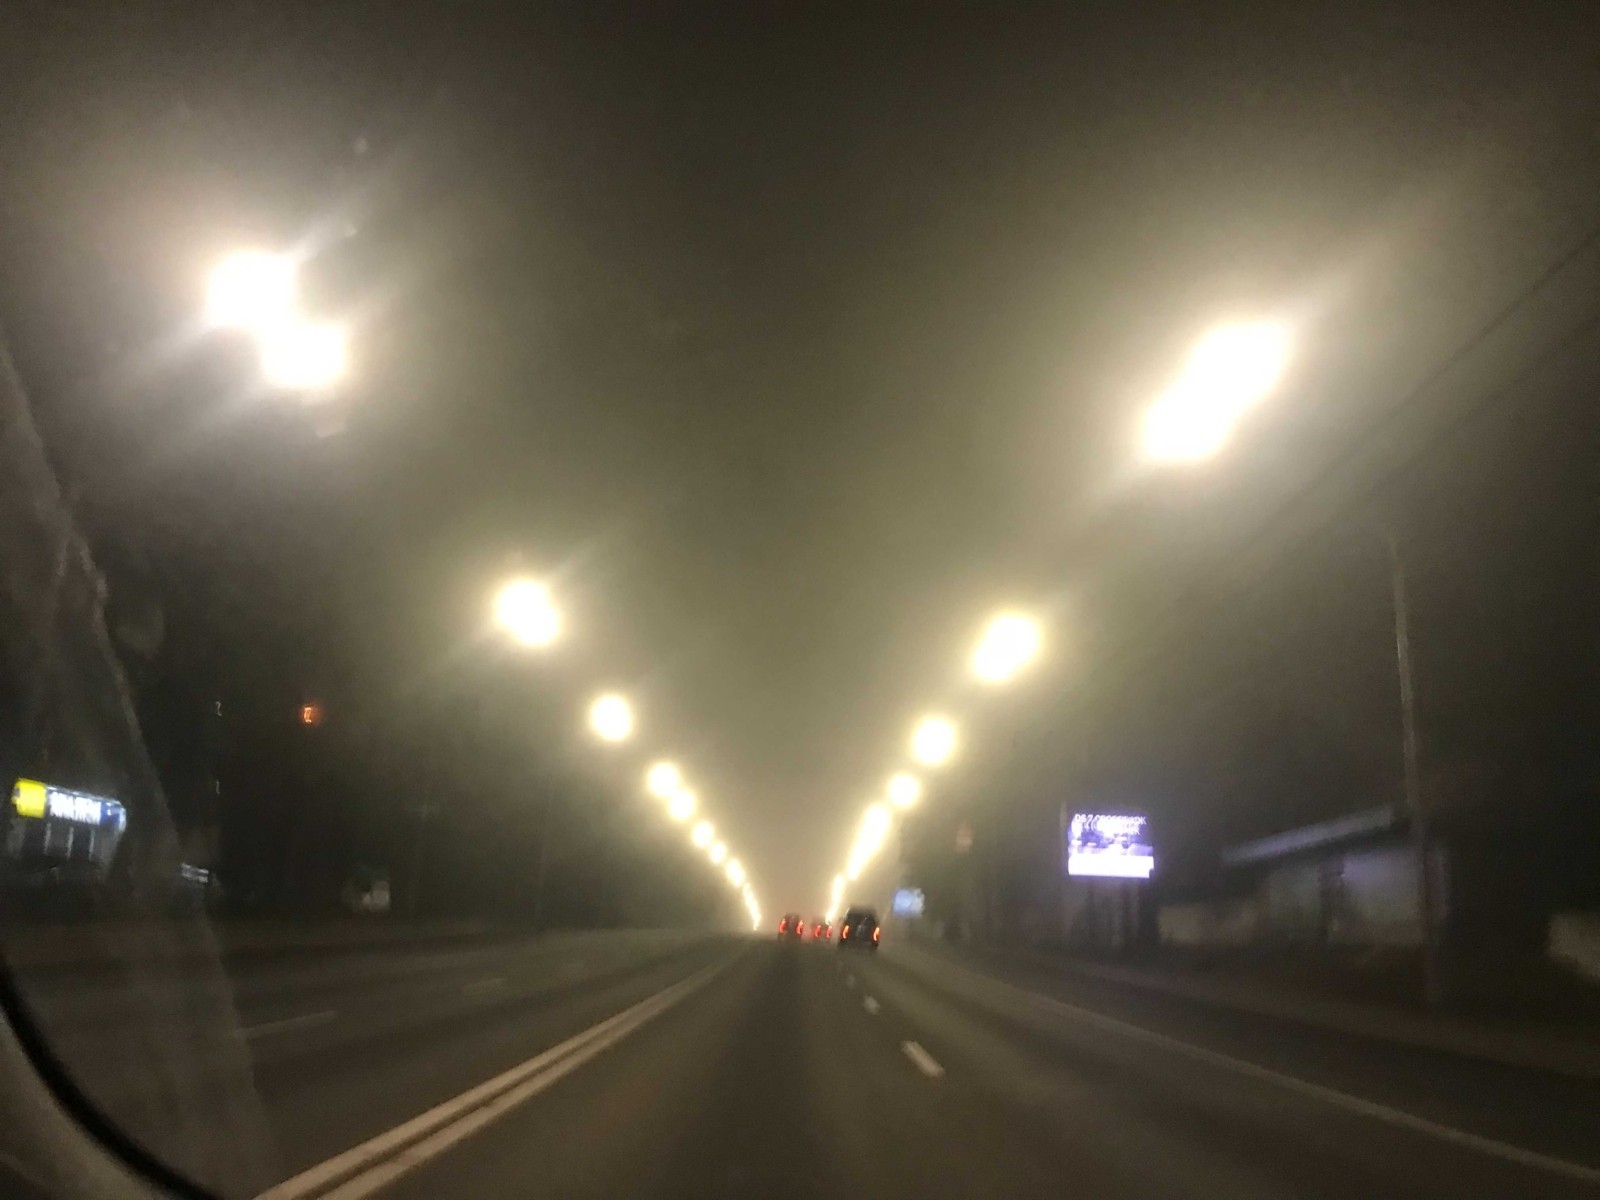 київ у тумані погана видимість на дорозі